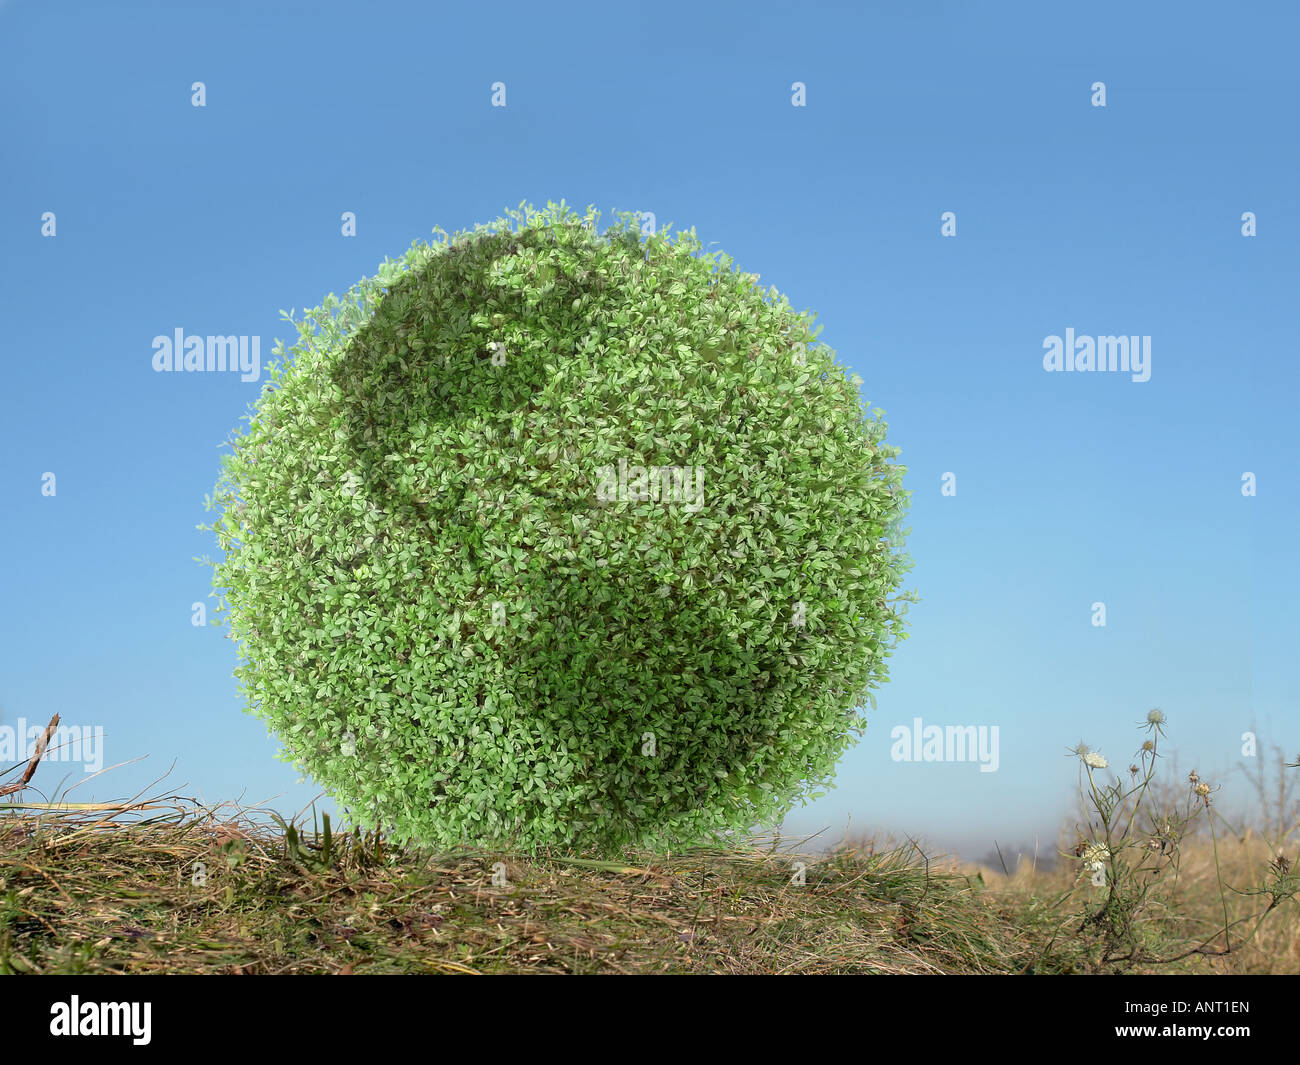 Pianta verde globo con sovrapposto nei continenti americani seduti in erba oltre il cielo blu chiaro Foto Stock